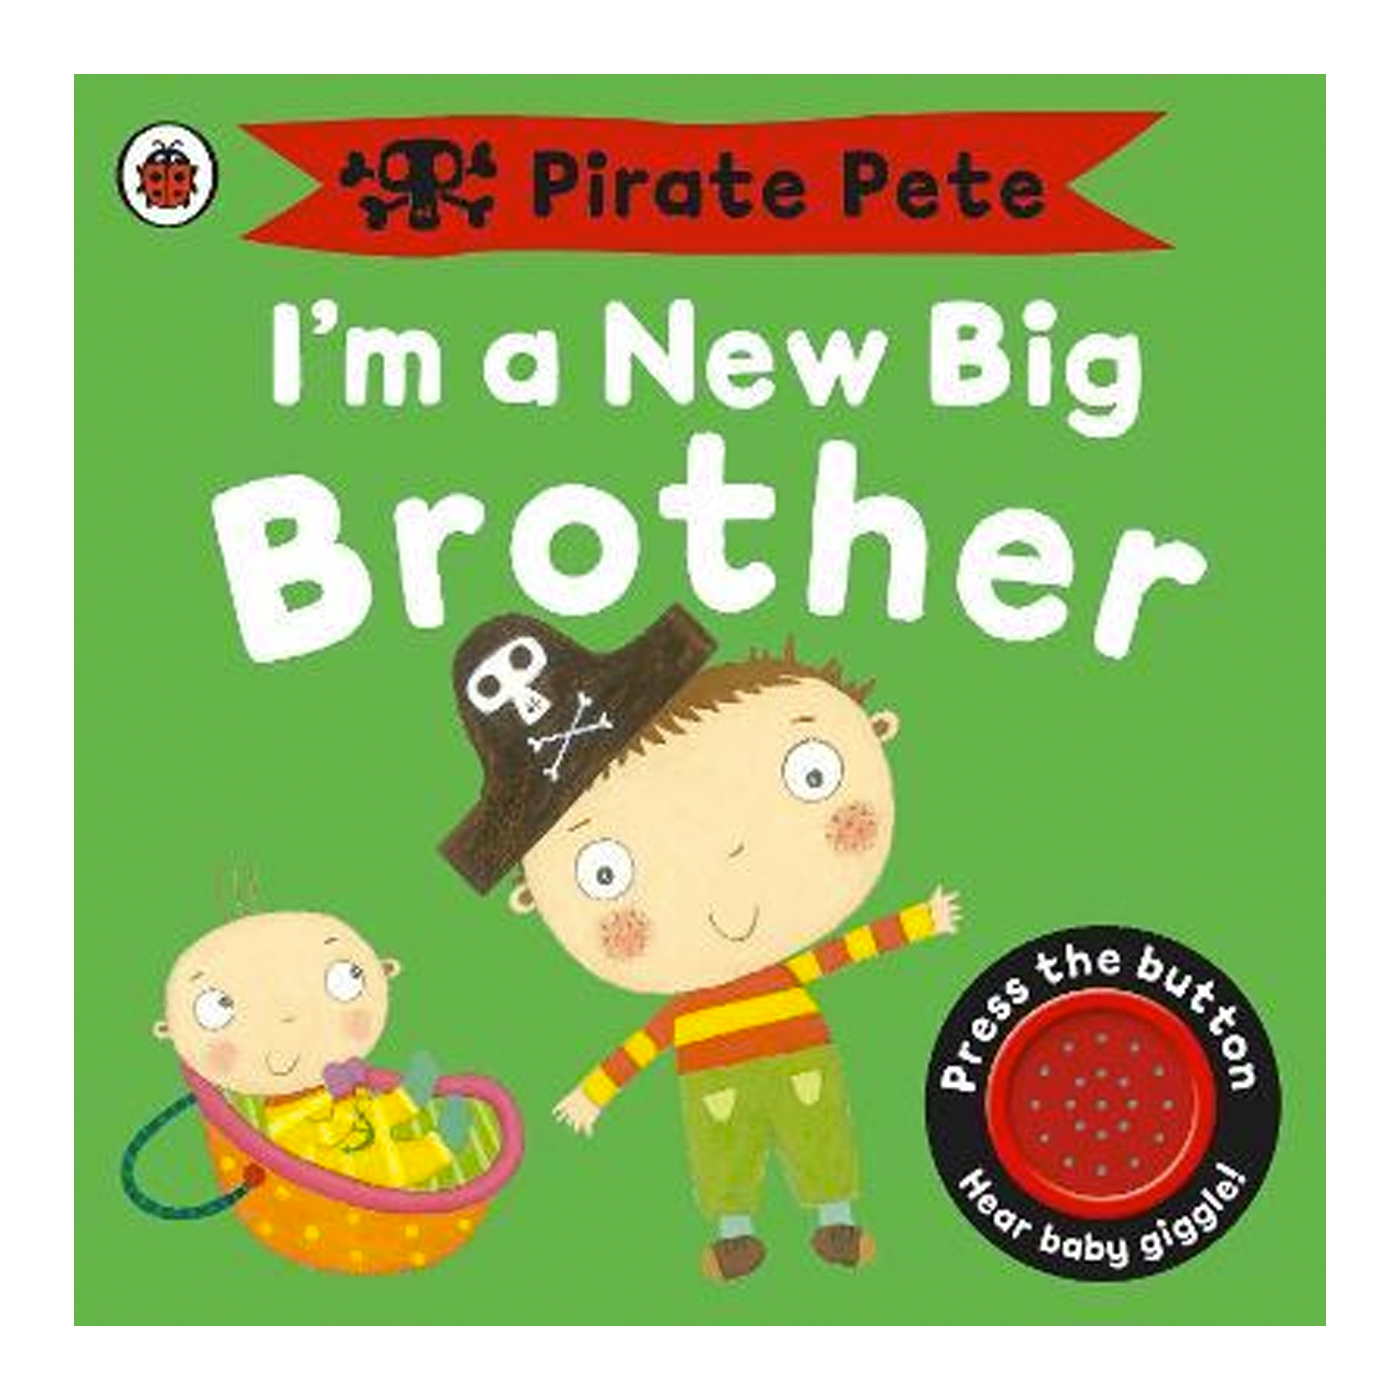  I'm a New Big Brother: A Pirate Pete book